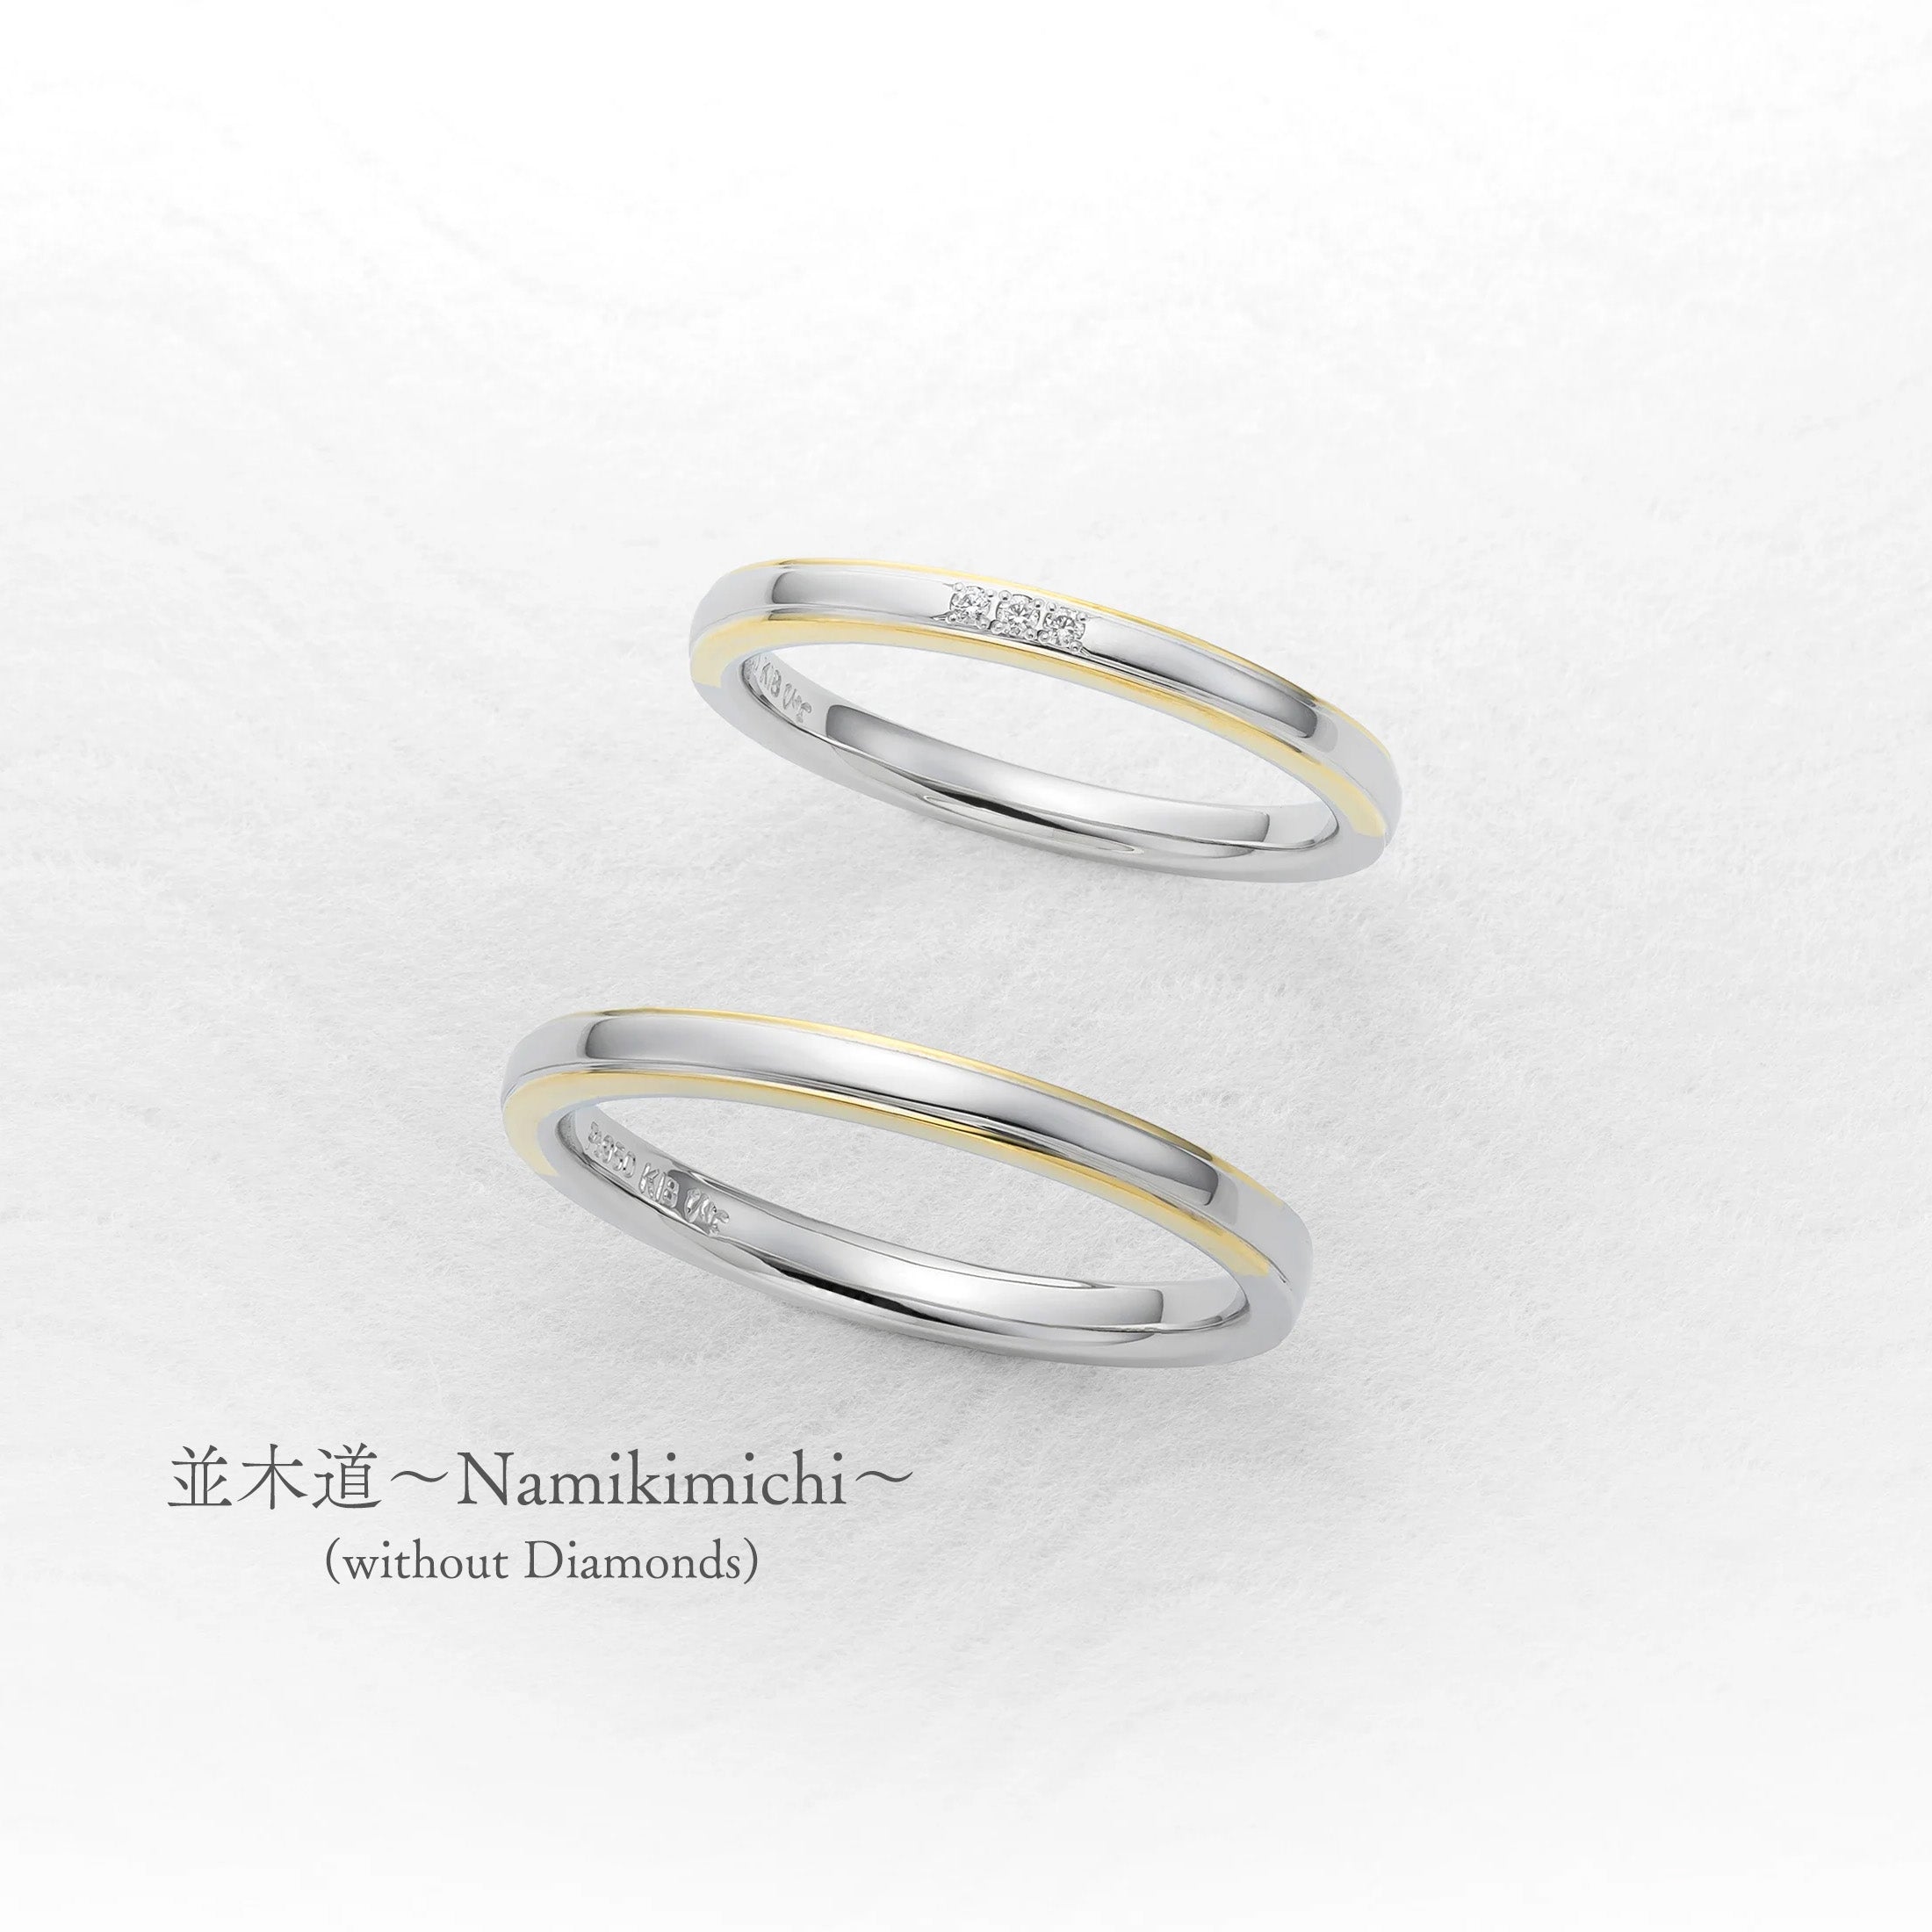 並木道〜Namikimichi〜(without Diamonds)